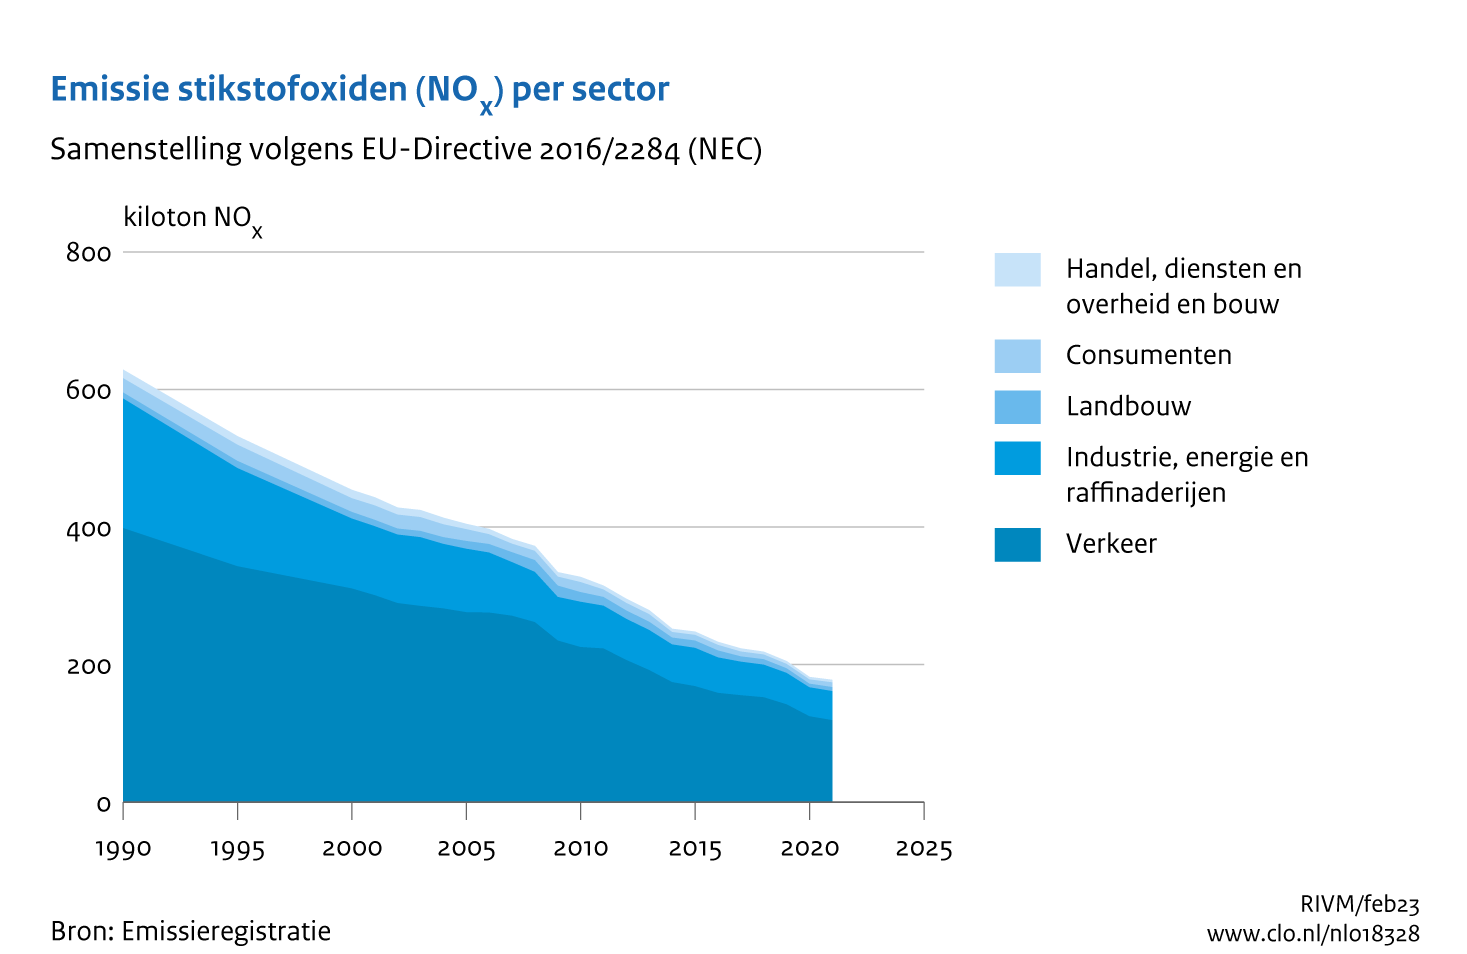 Figuur NOx-emissie per sector. In de rest van de tekst wordt deze figuur uitgebreider uitgelegd.